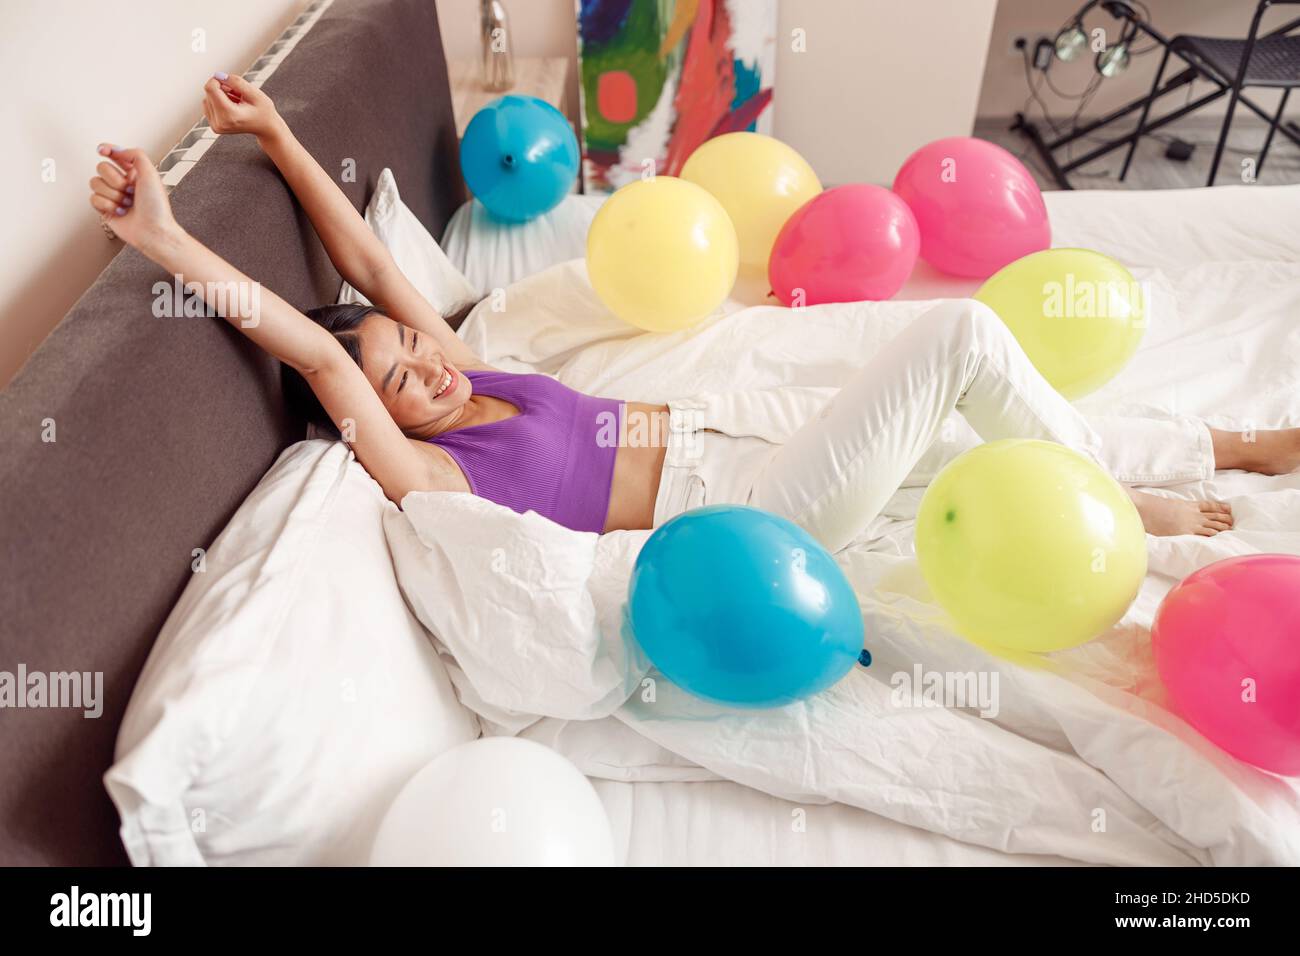 Glückliche junge Frau, die im Bett mit bunten Luftballons liegt Stockfoto